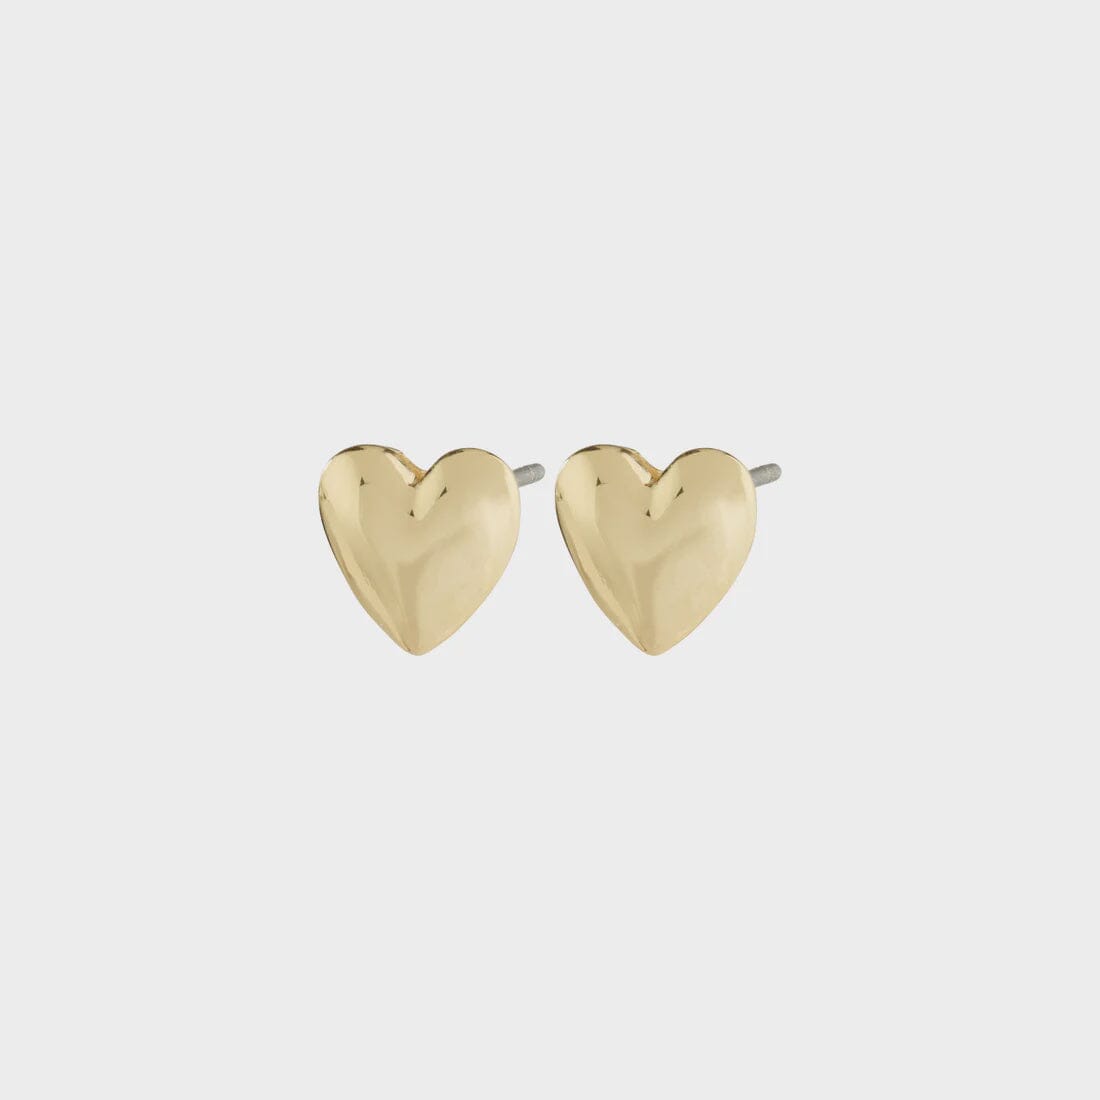 SOPHIA GOLD HEART EARRINGS Jewelry PILGRIM 